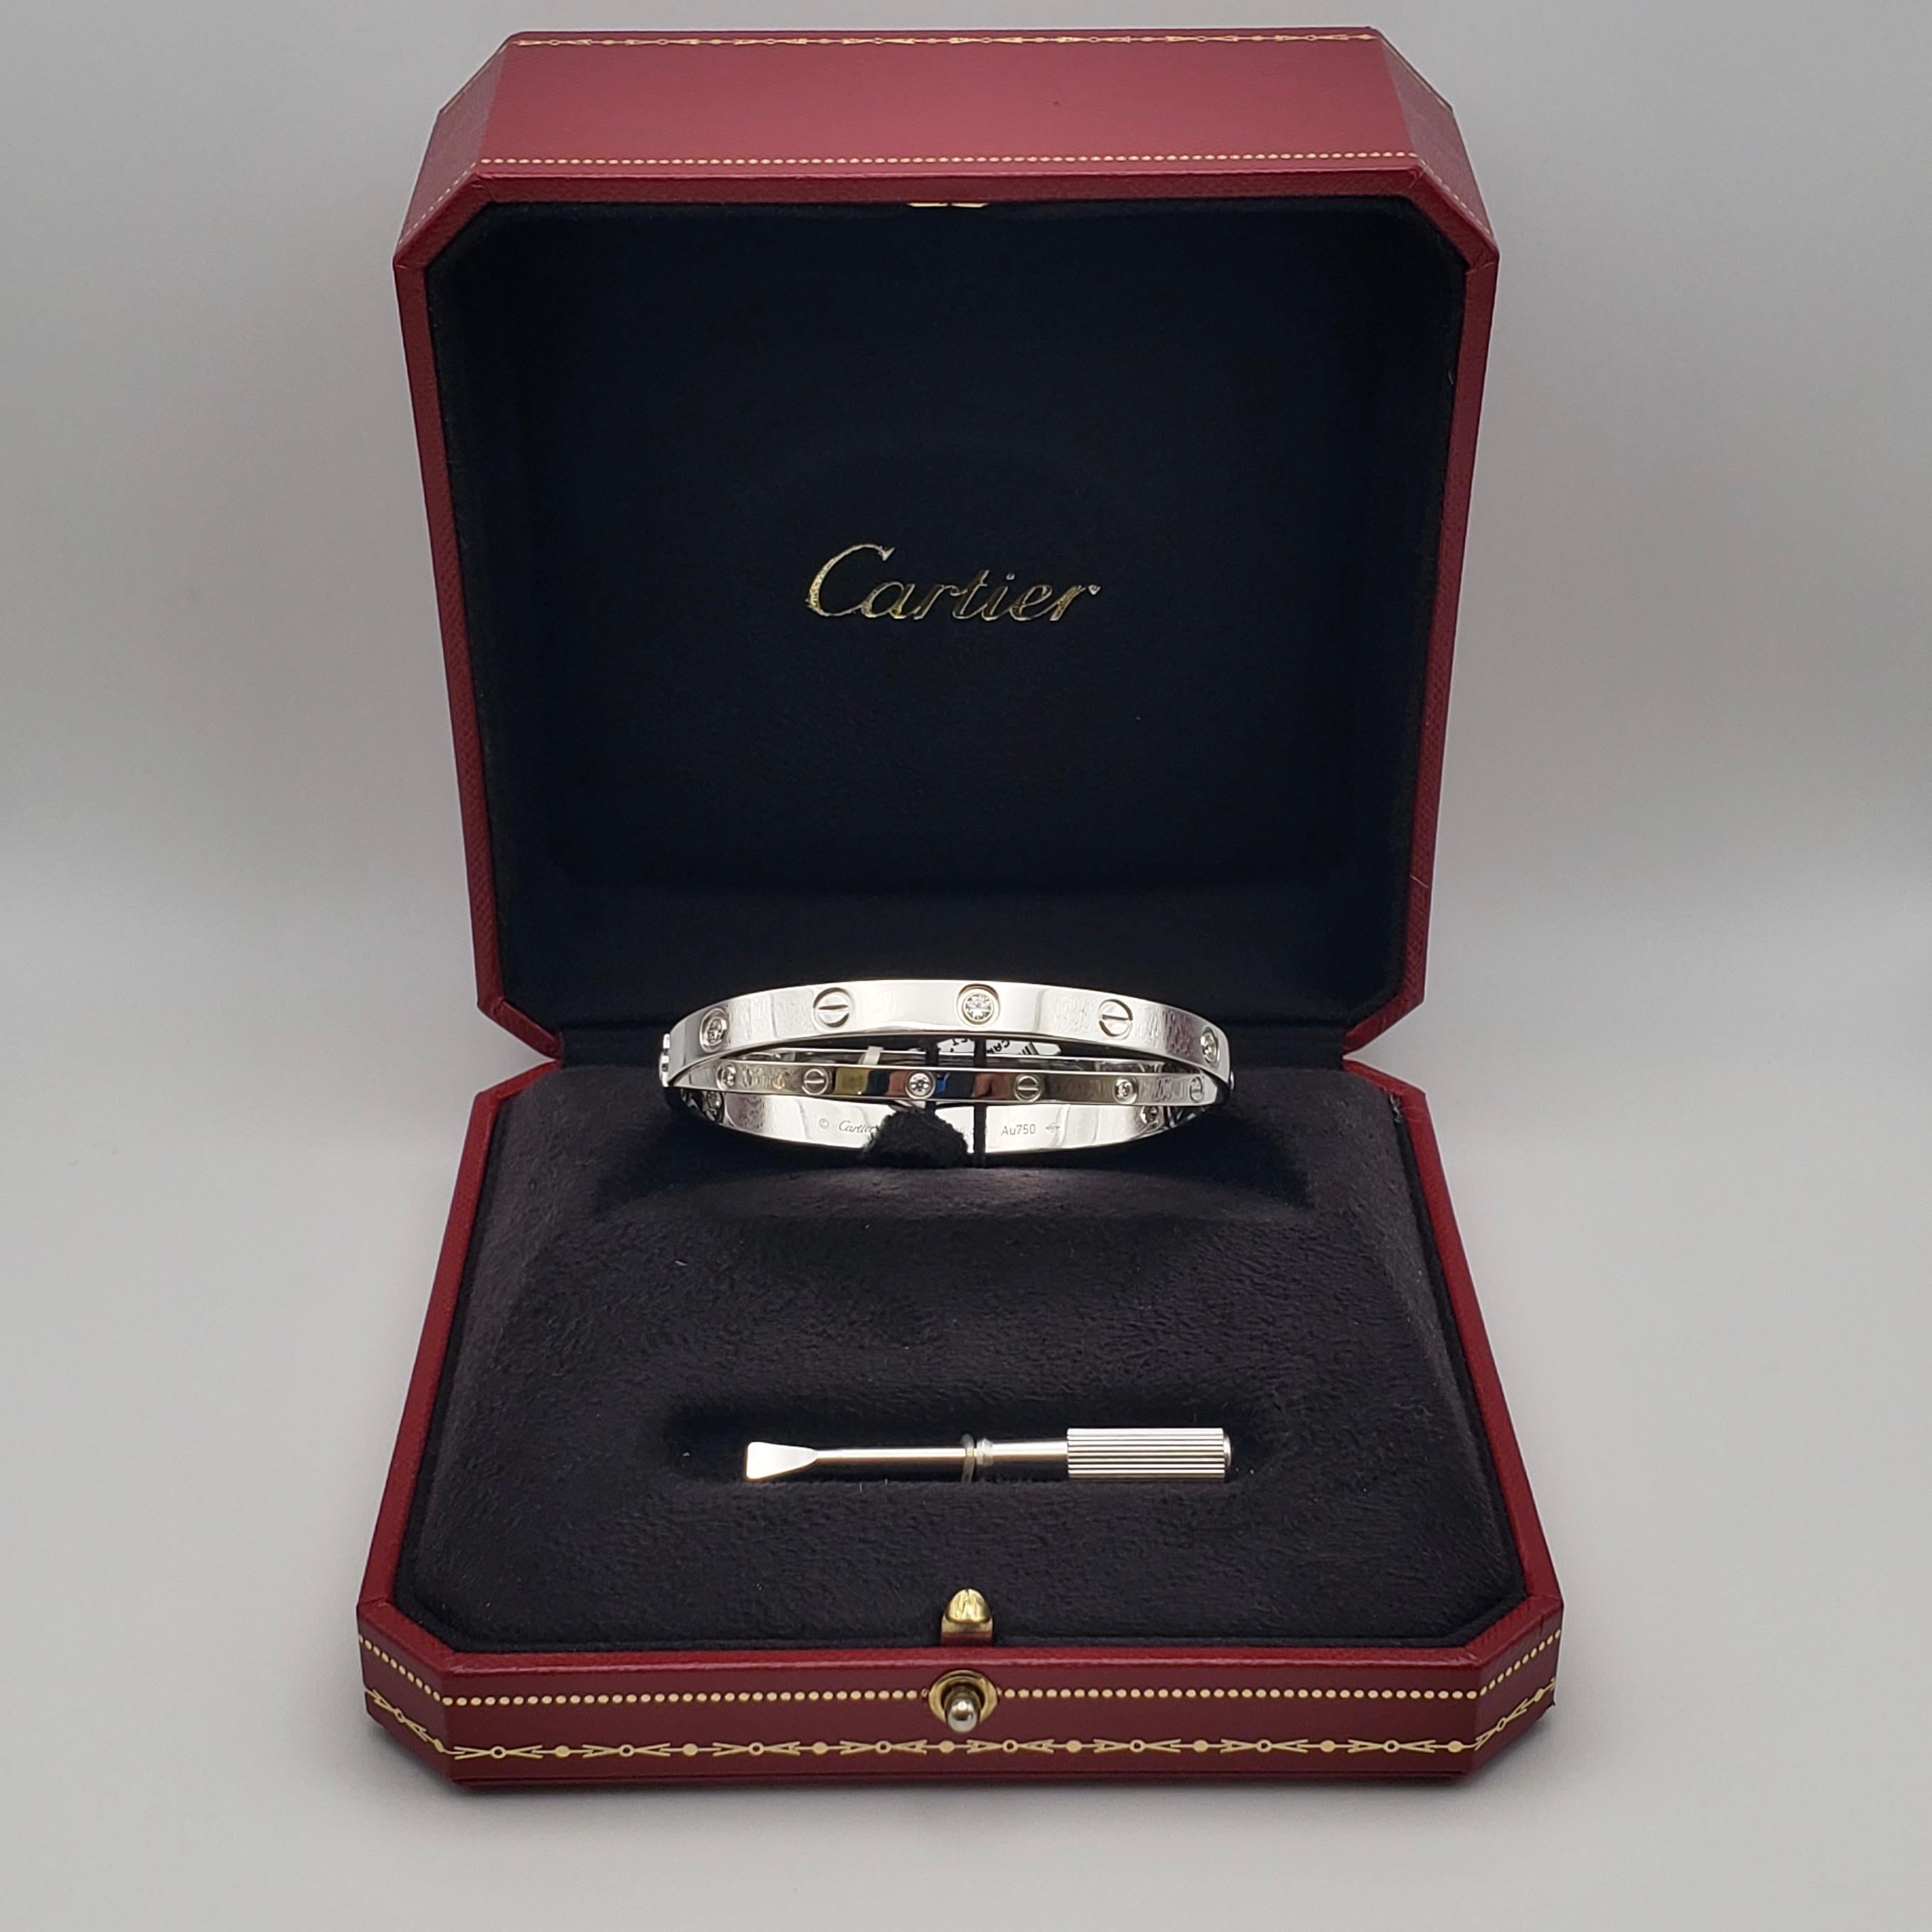 Eine authentische 18K Weißgold Diamant Doppel Cartier Love Armband. 

Gewicht des Diamanten: 0,78 CT

Seriennummer: BVL463

Metall: Au750 (18K W.G.)

Bruttogewicht: 49,80 Gramm

Der Originalkarton, der Schraubendreher und das Barcode-Etikett sind im